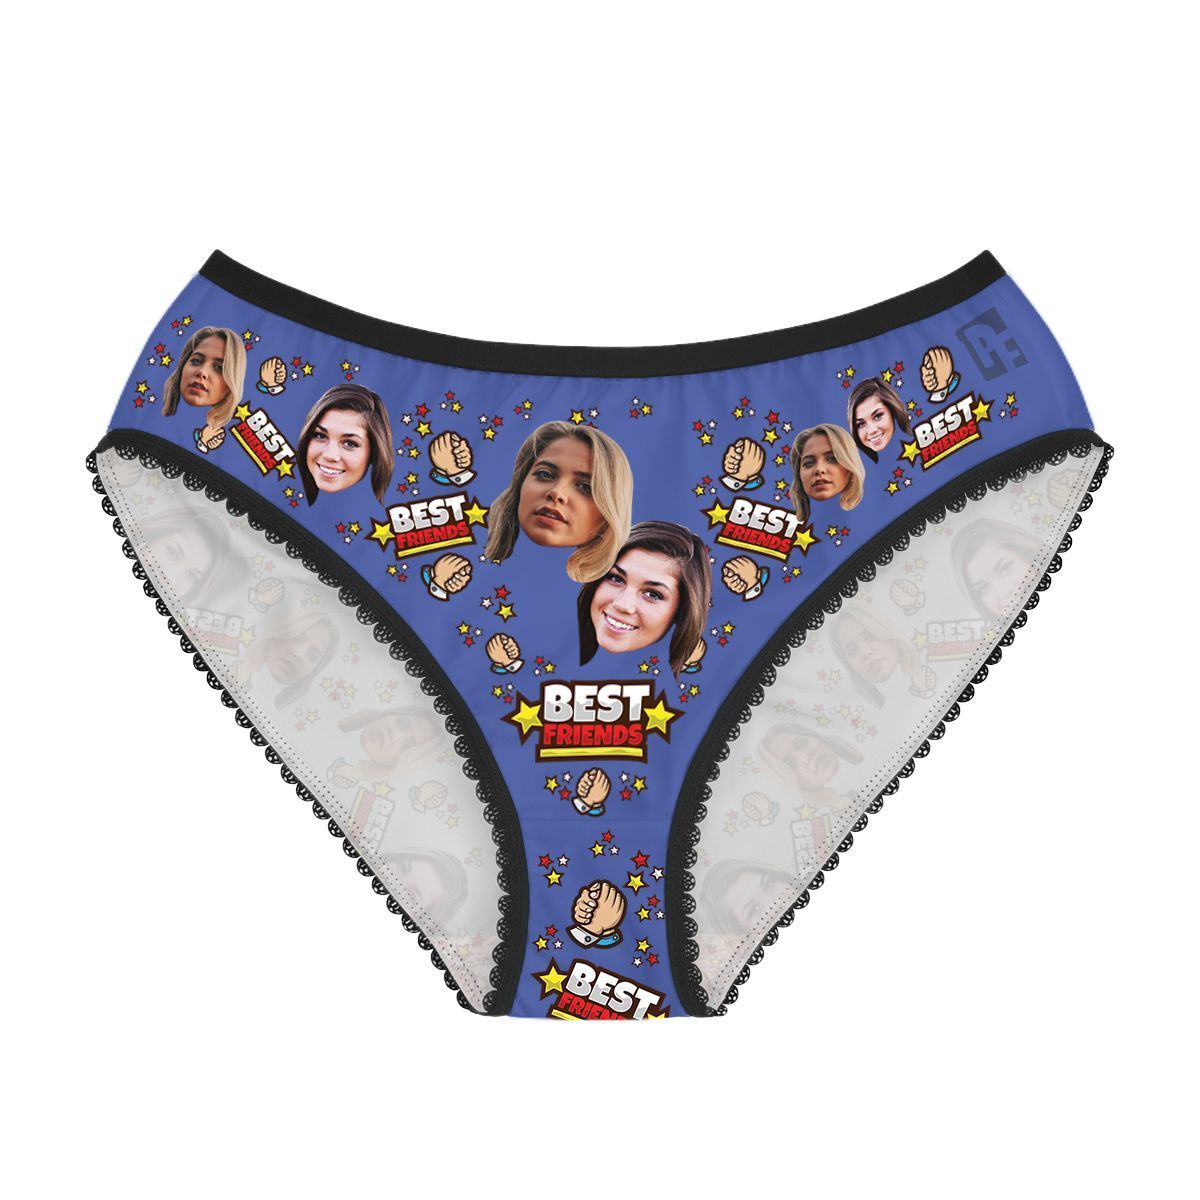 Darkblue Best Friends women's underwear briefs personalized with photo printed on them